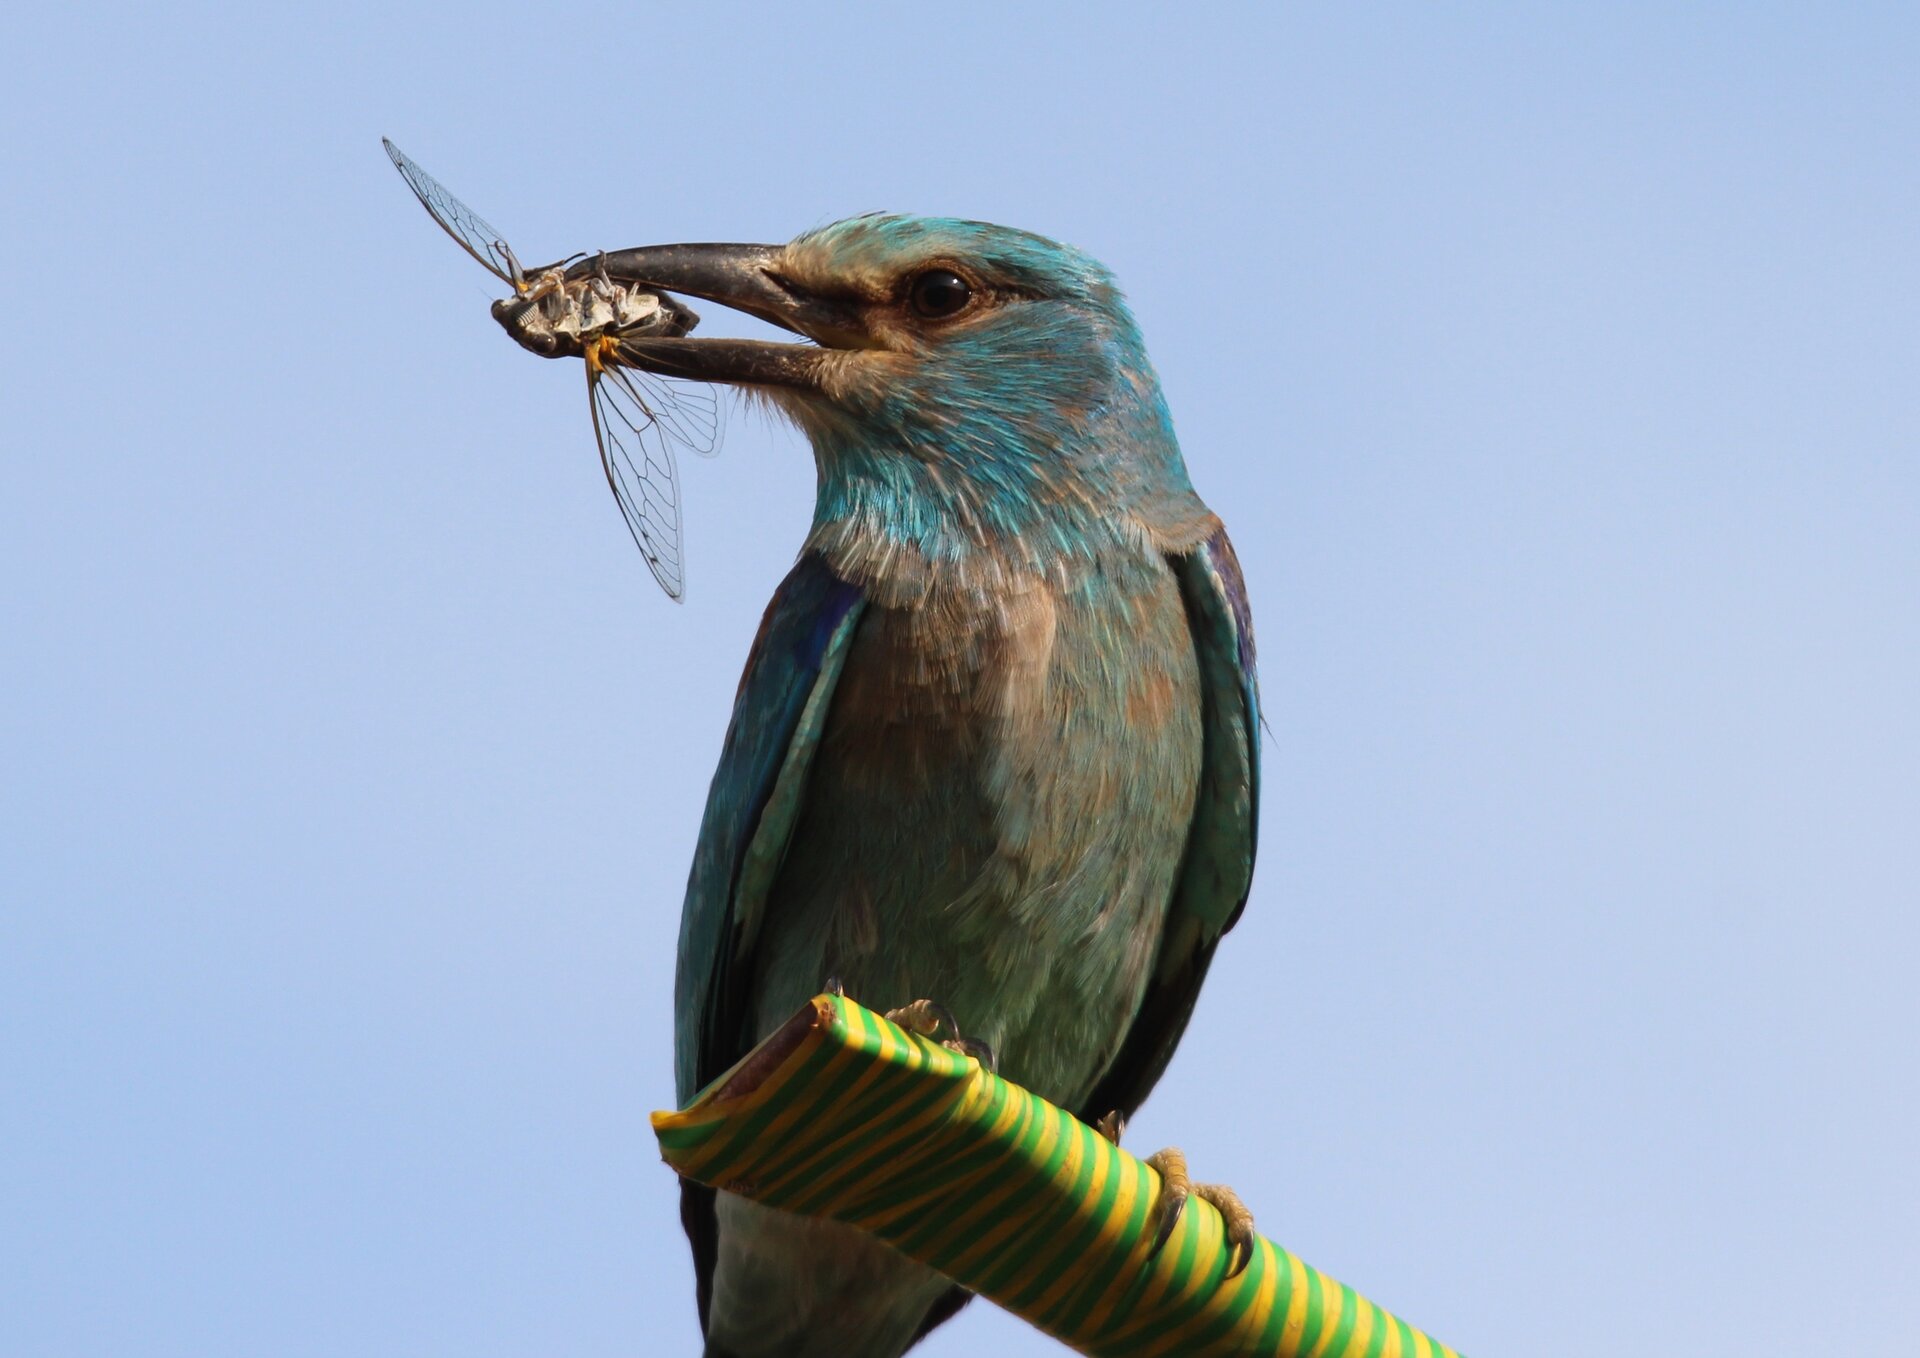 Fotografia przedstawia w zbliżeniu ptaka o niebieskawym, mieniącym się upierzeniu. To kraska. Ptak trzyma w dziobie złowionego owada. Siedzi na owiniętej pasiastą taśmą deseczce.